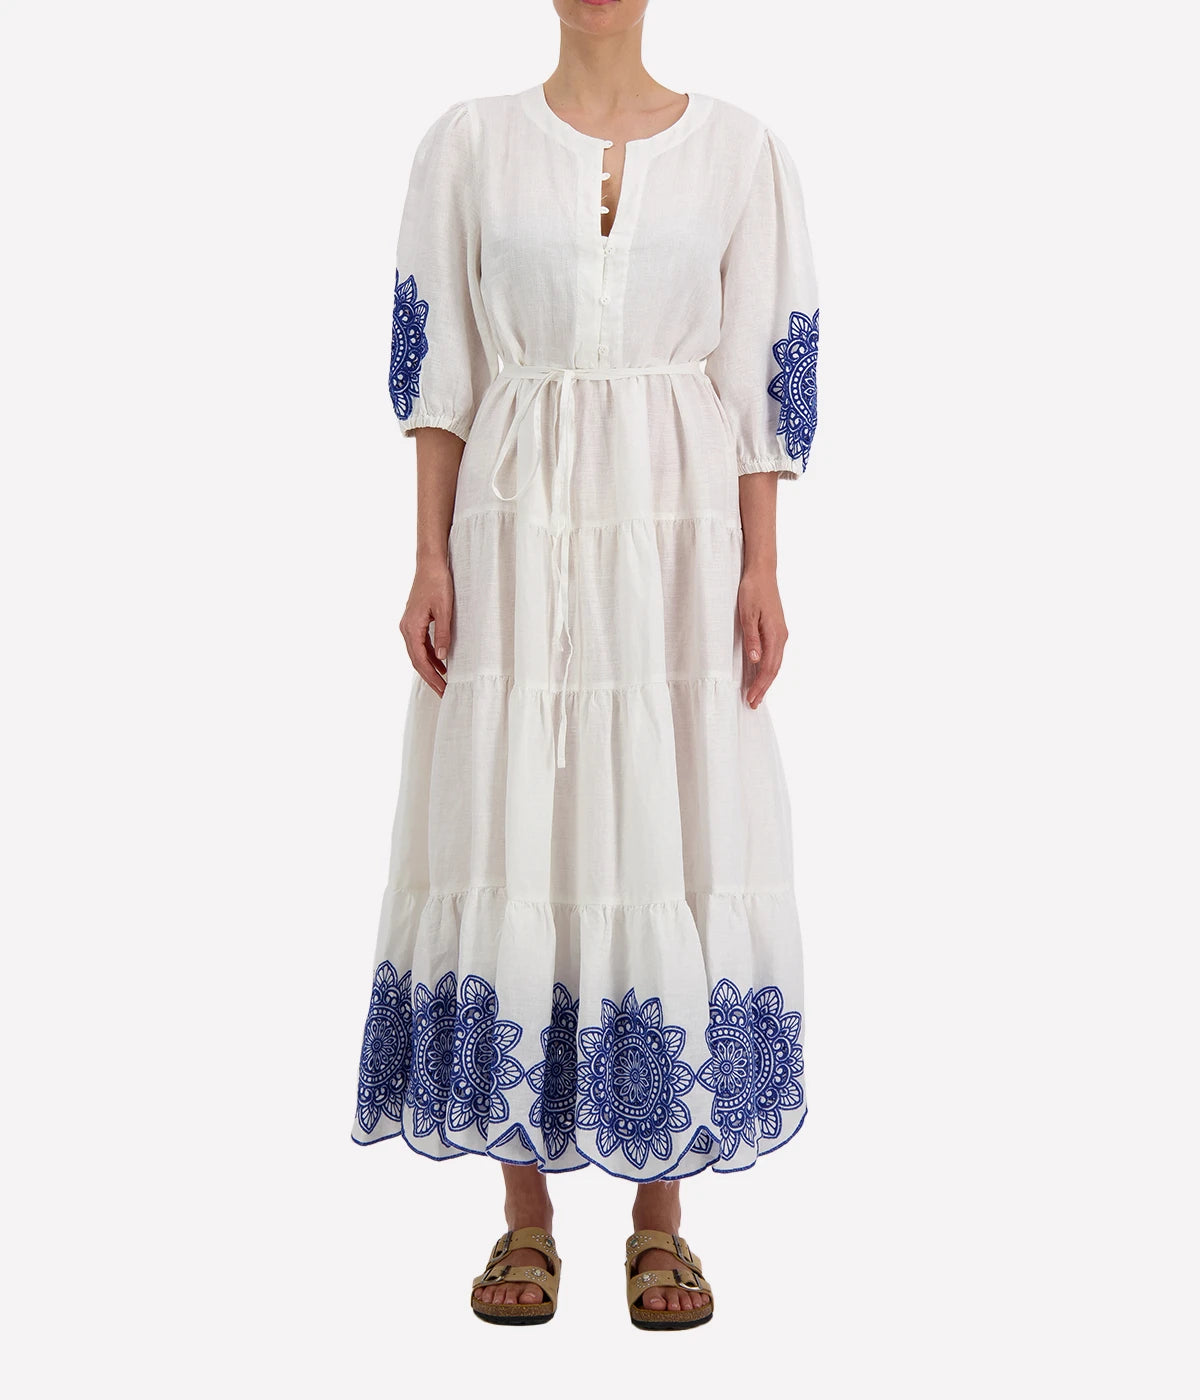 Long Daisy Dress in White & Blue